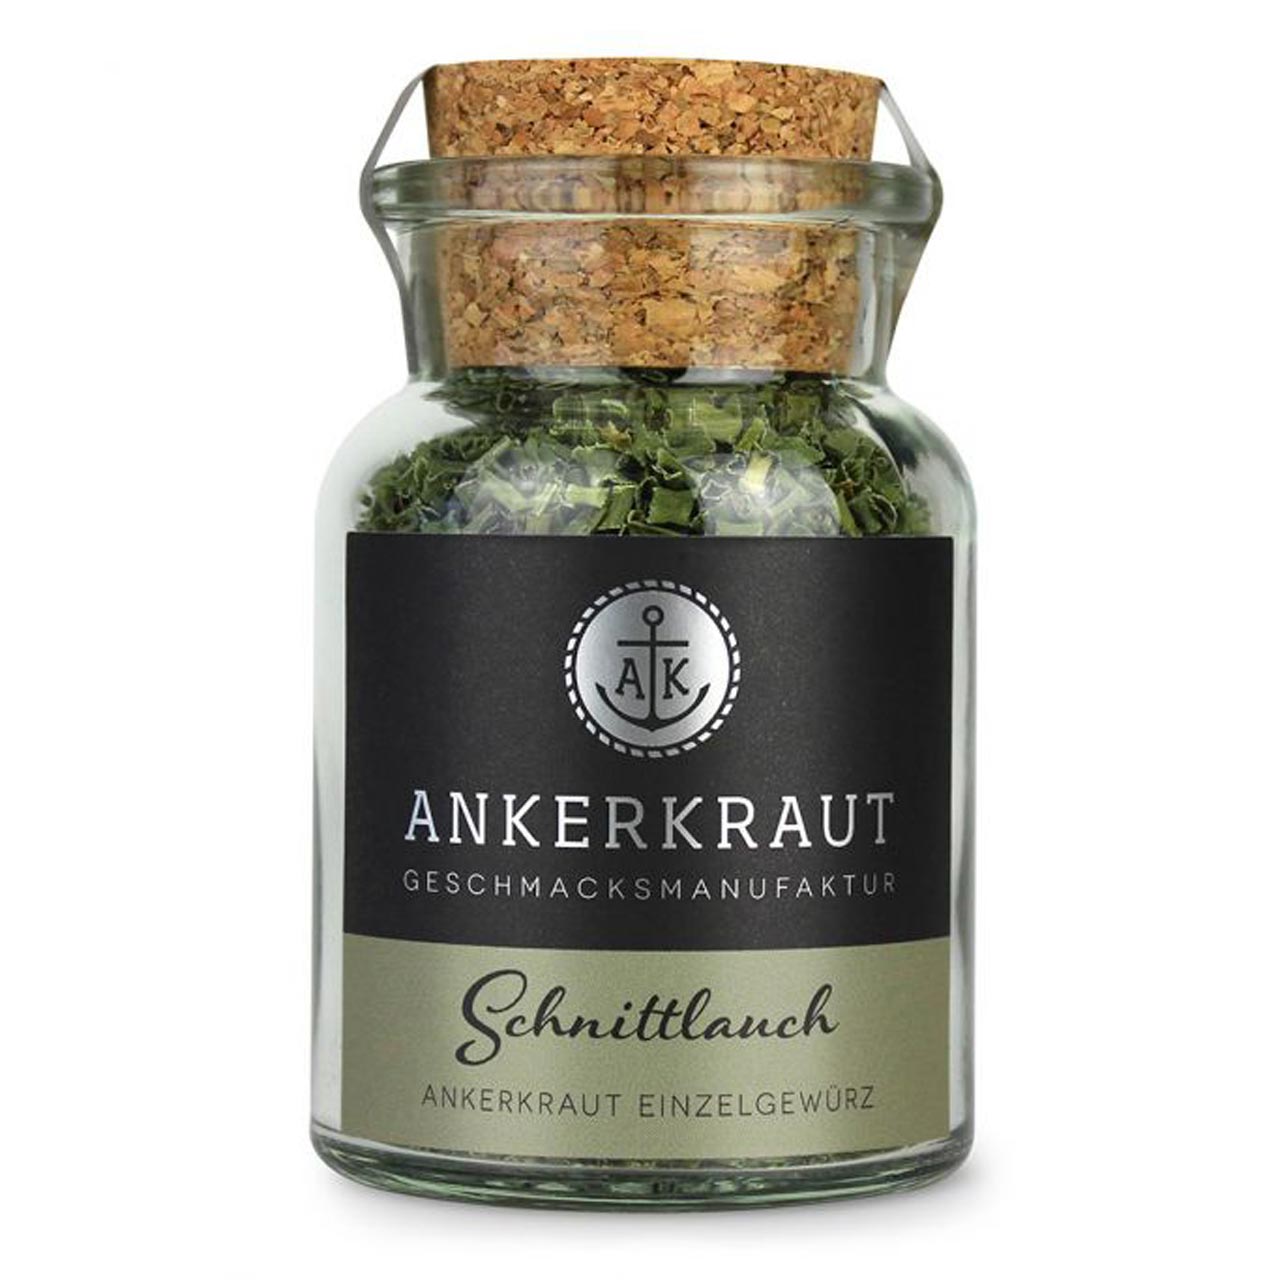 Ankerkraut Schnittlauch, 8g Korkenglas